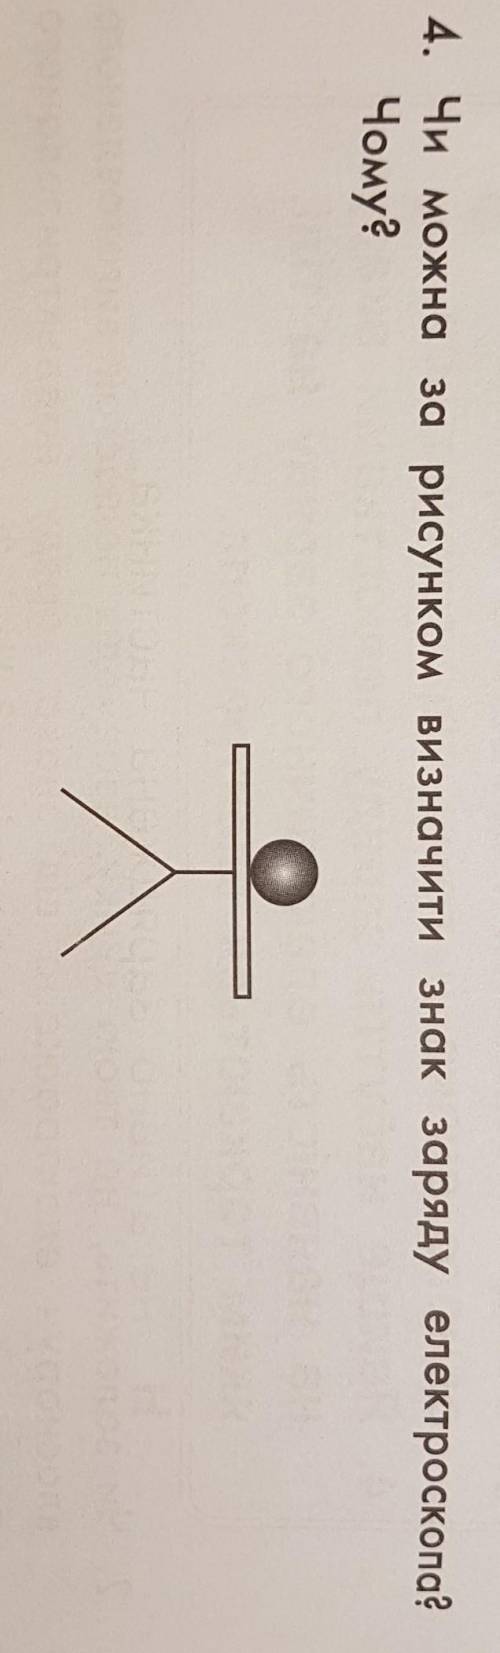 Чи можна за рисунком визначити знак заряду електроскопа?ЧОМУ ?​